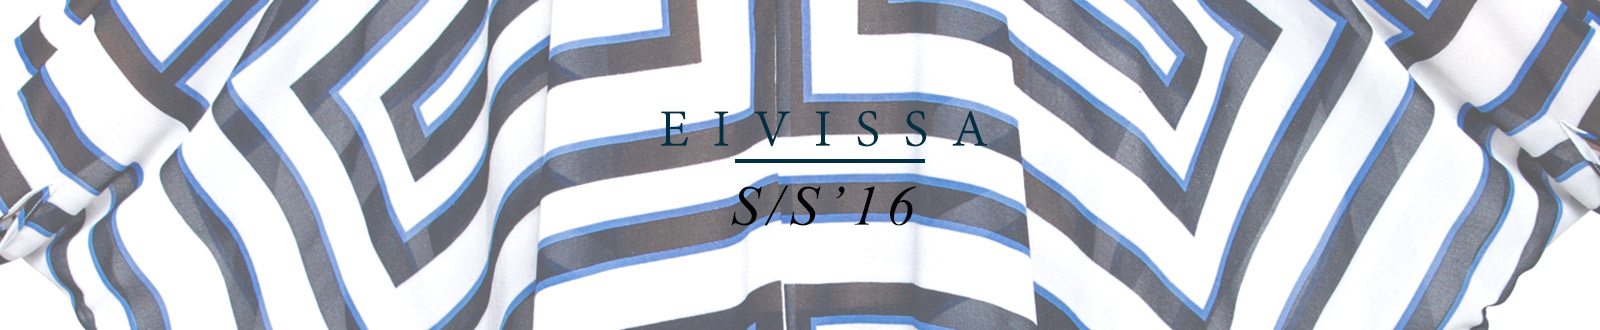 EVISSA SS16